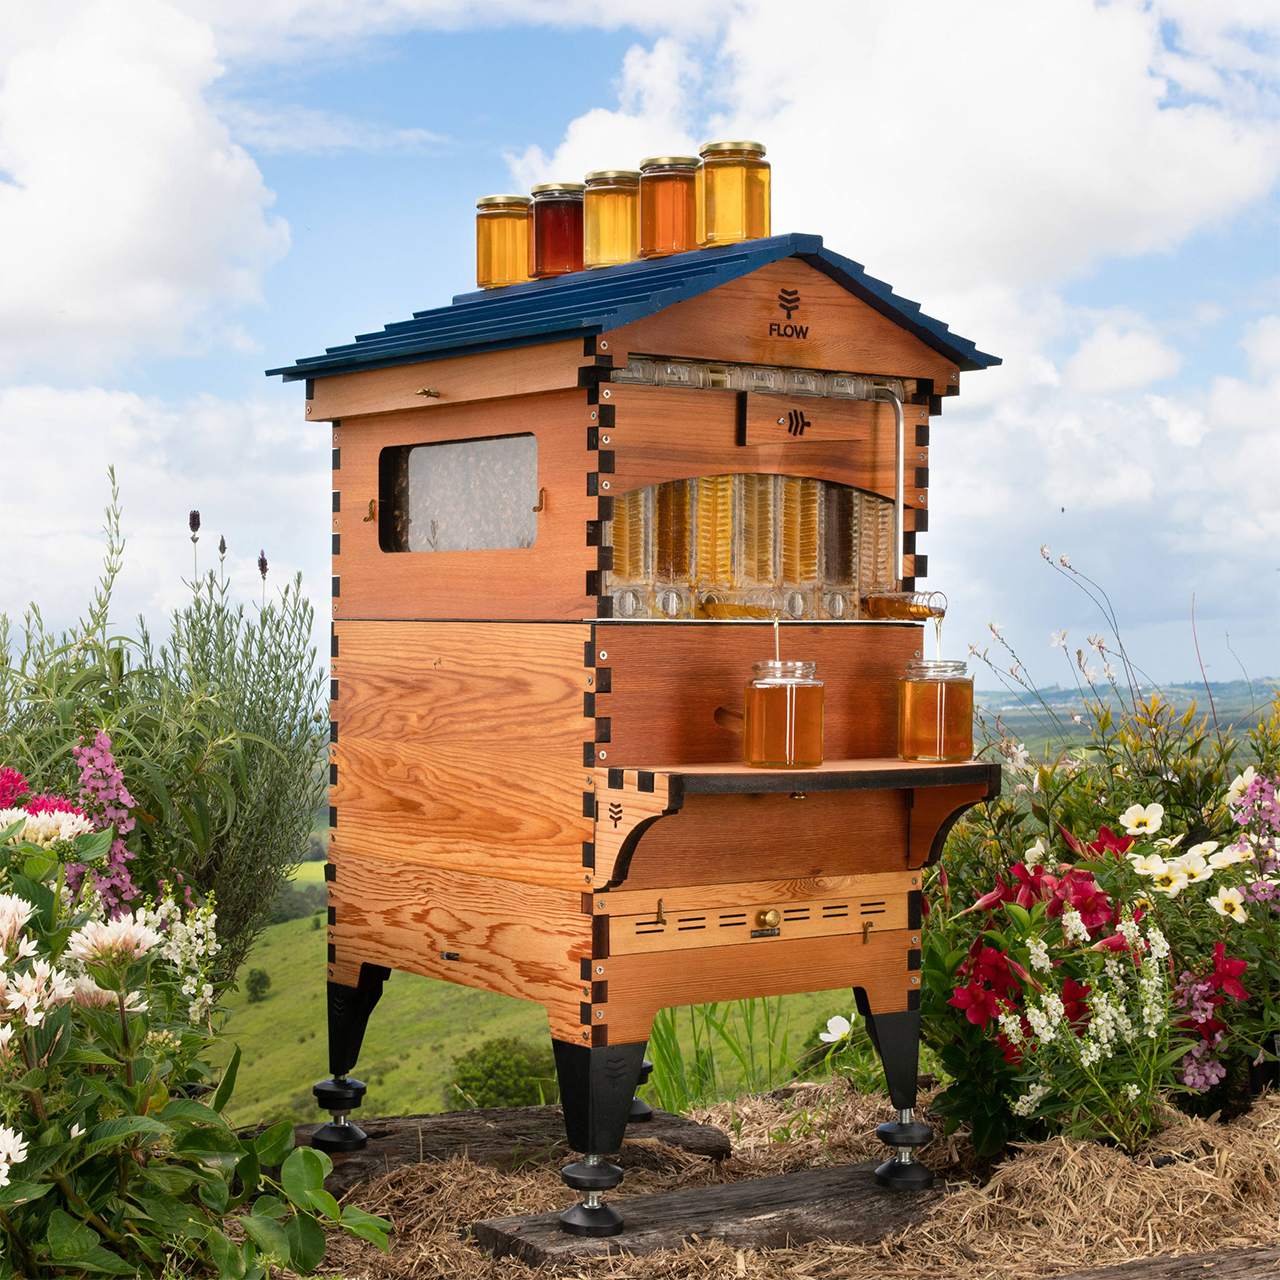 神奇的flow hive新型蜂箱,让养蜂变得如此简单!